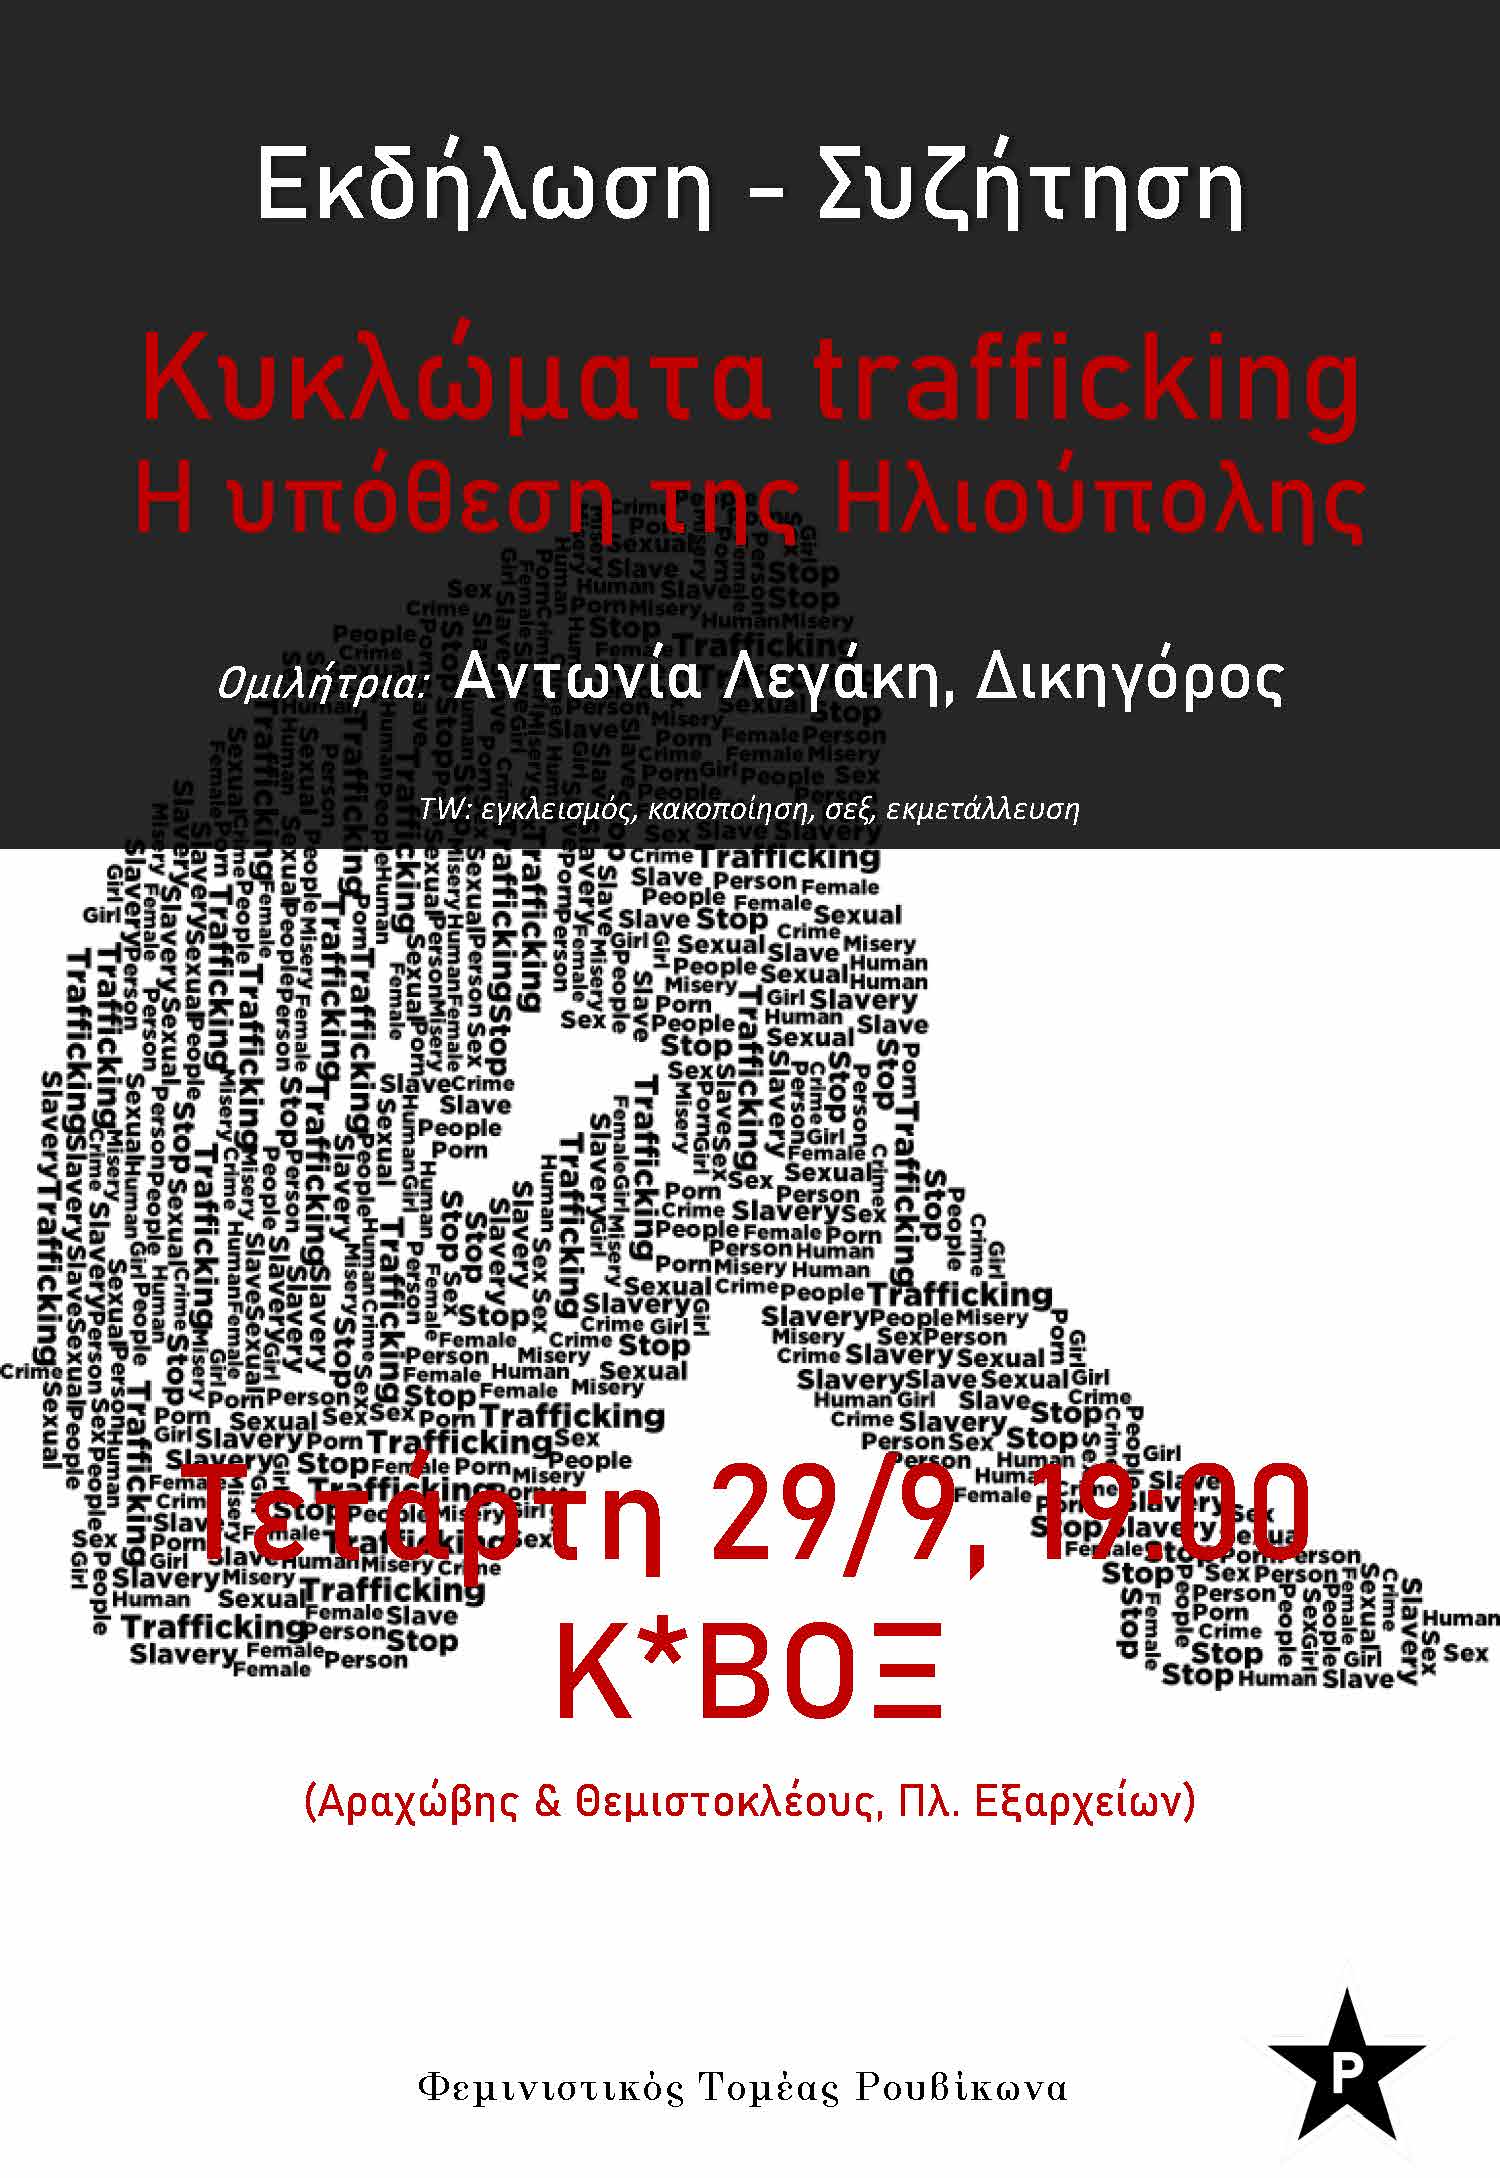 Εκδήλωση – συζήτηση για τα κυκλώματα trafficking στο Κ*ΒΟΞ